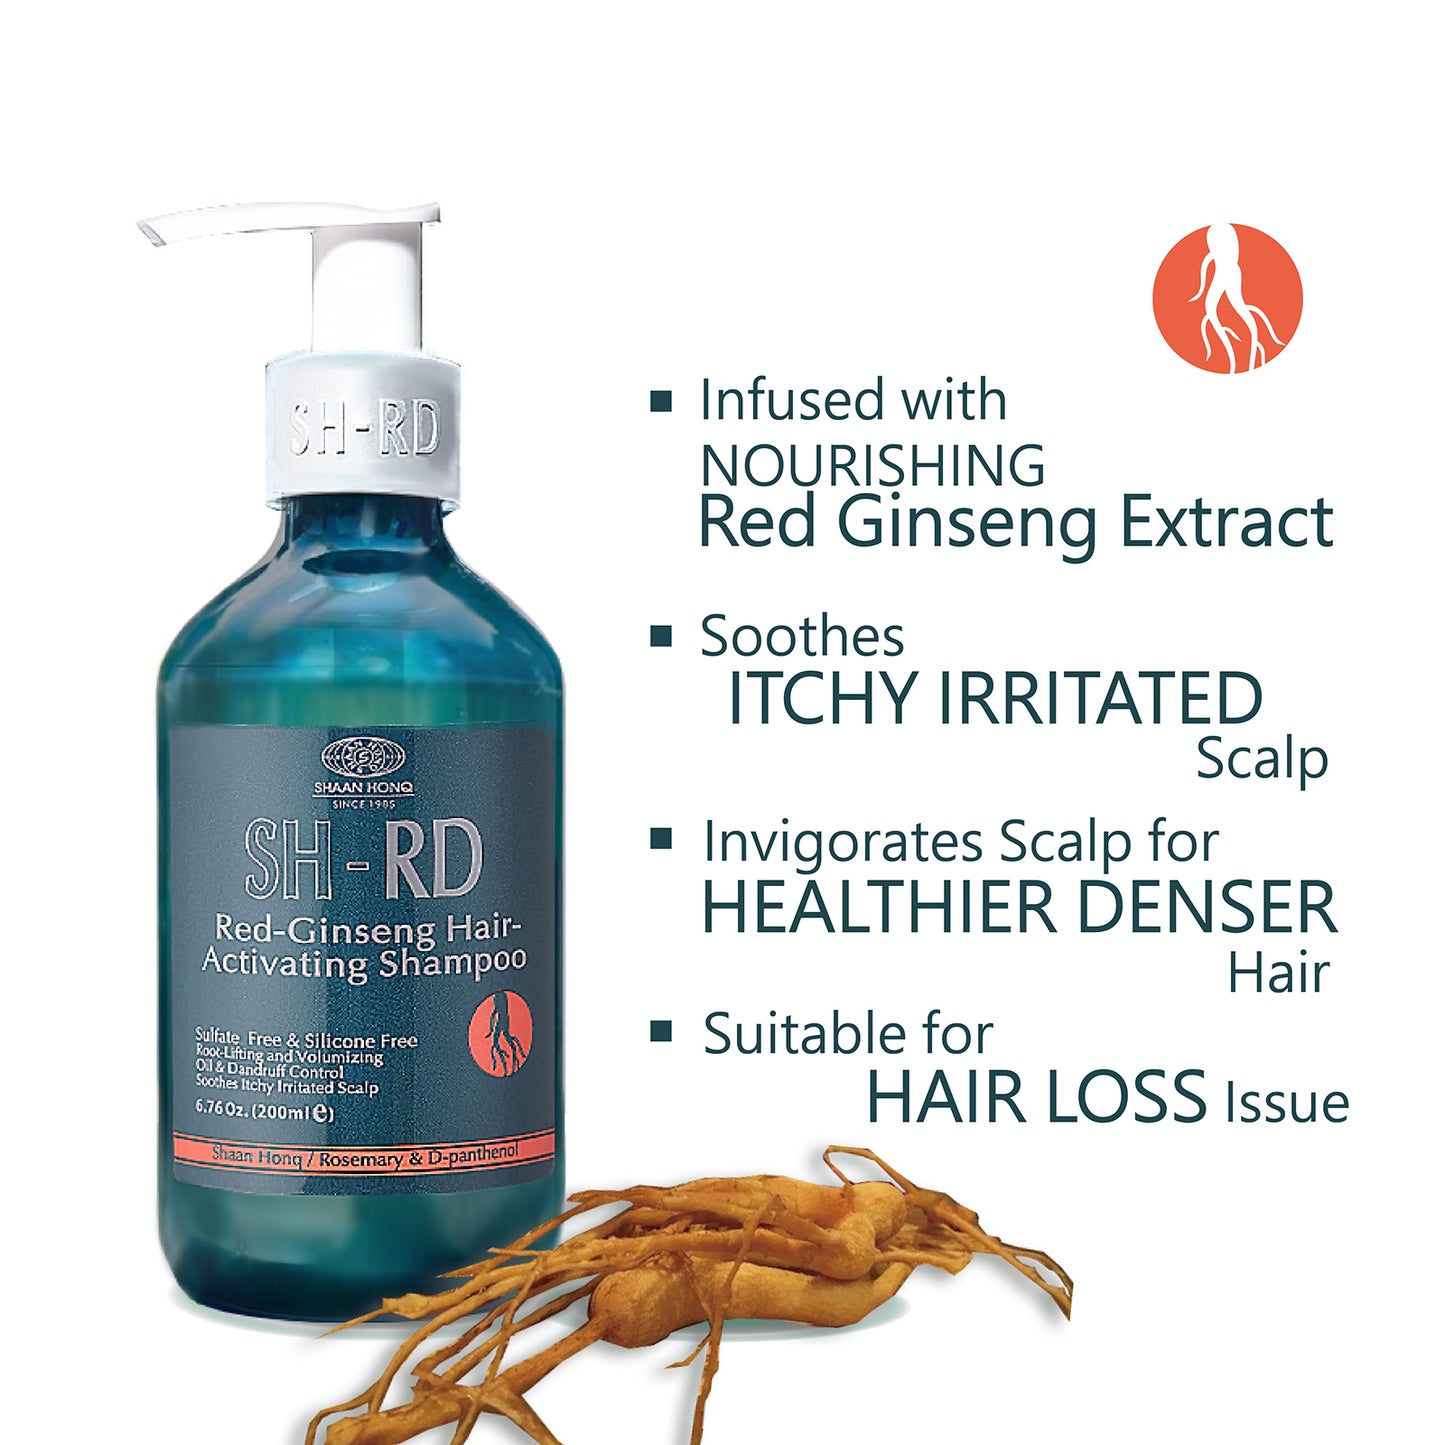 SH-RD Red-Ginseng Hair-Activating Shampoo (6.76oz/200ml)